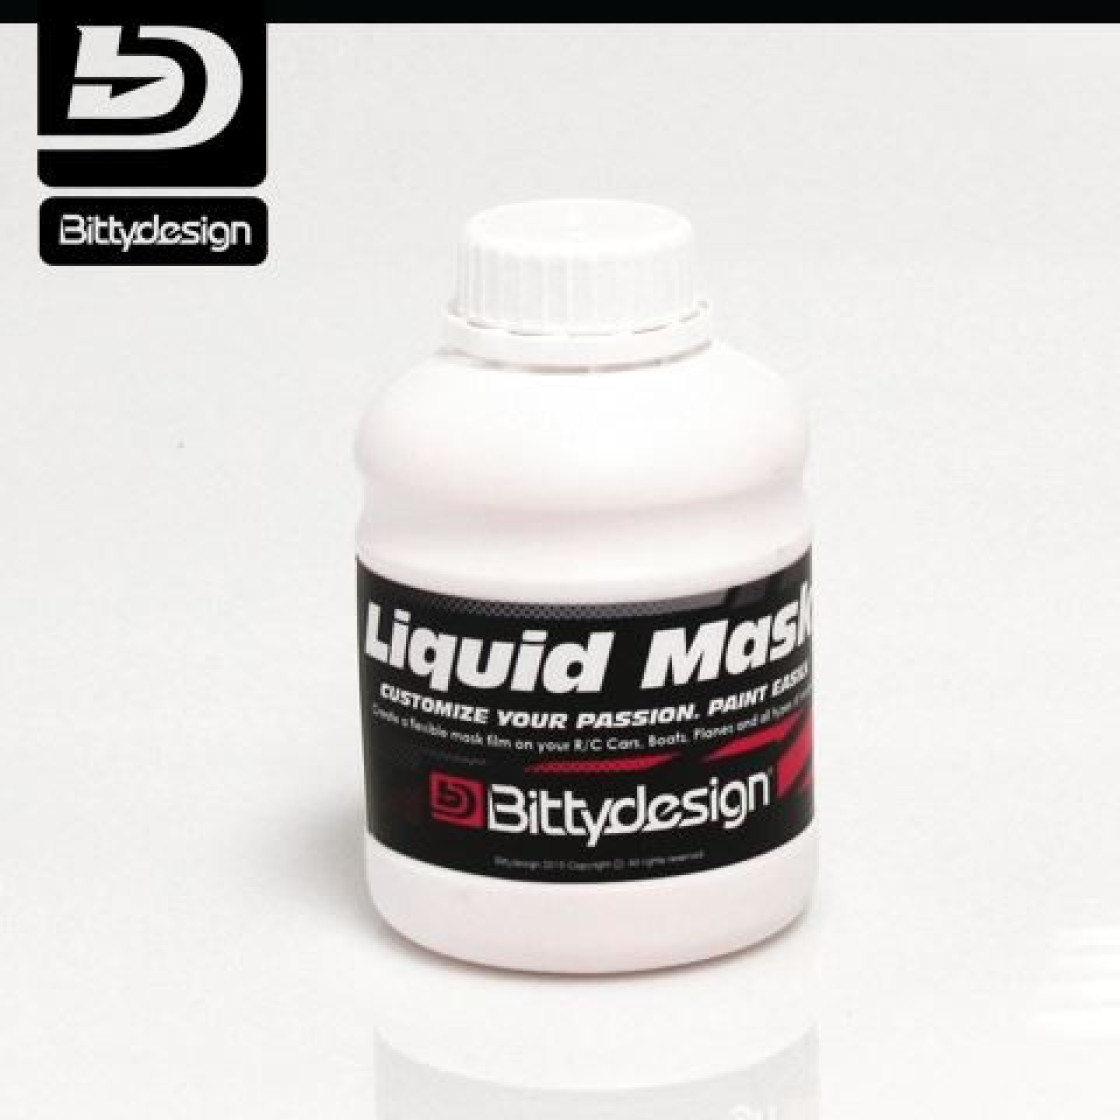 Bittydesign LIQUID MASK 500gr, 19,99 €